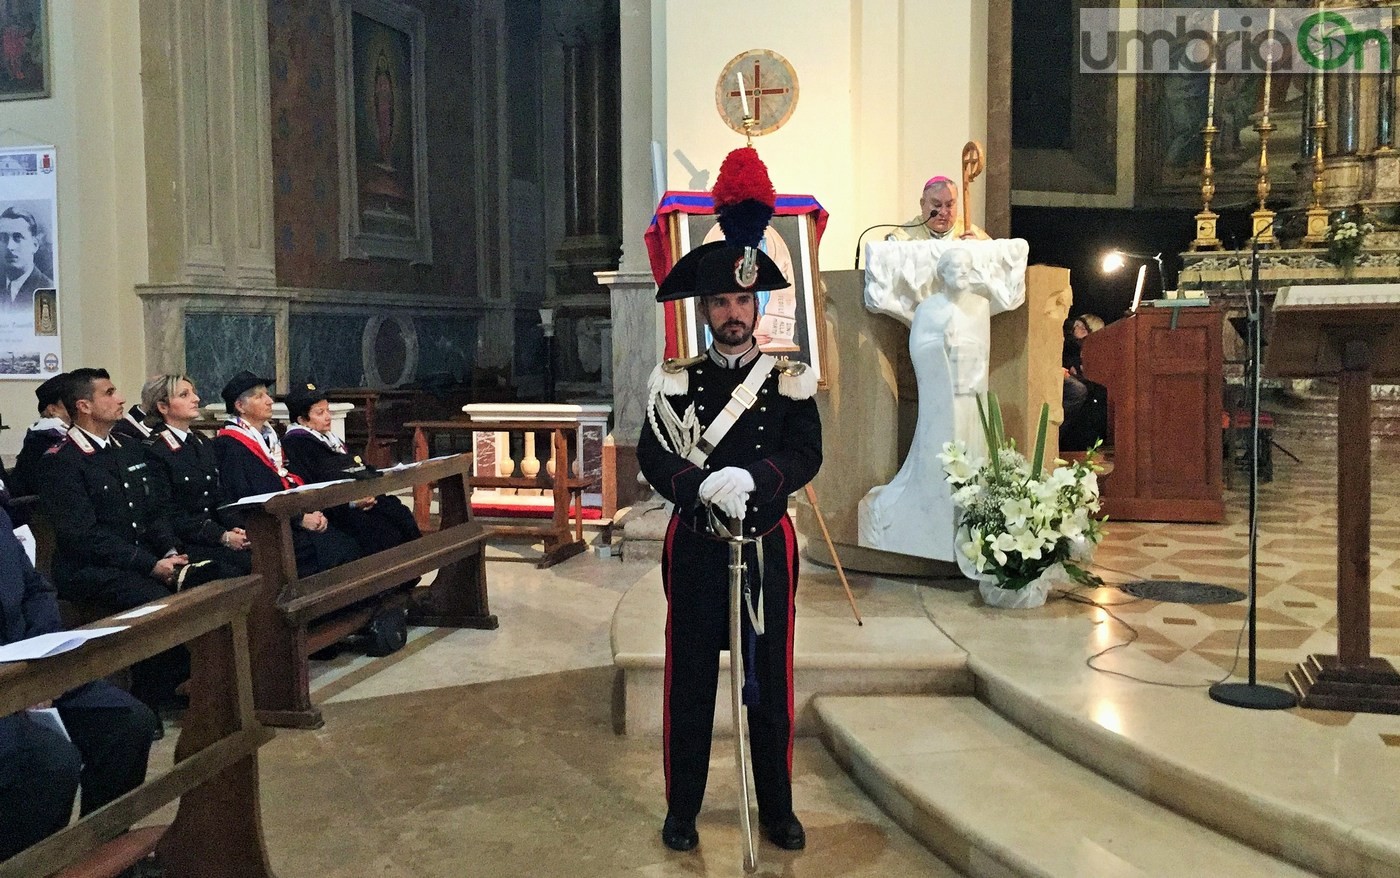 Virgo-Fidelis-carabinieri-Terni-in-cattedrale-21-novembre-2016-13